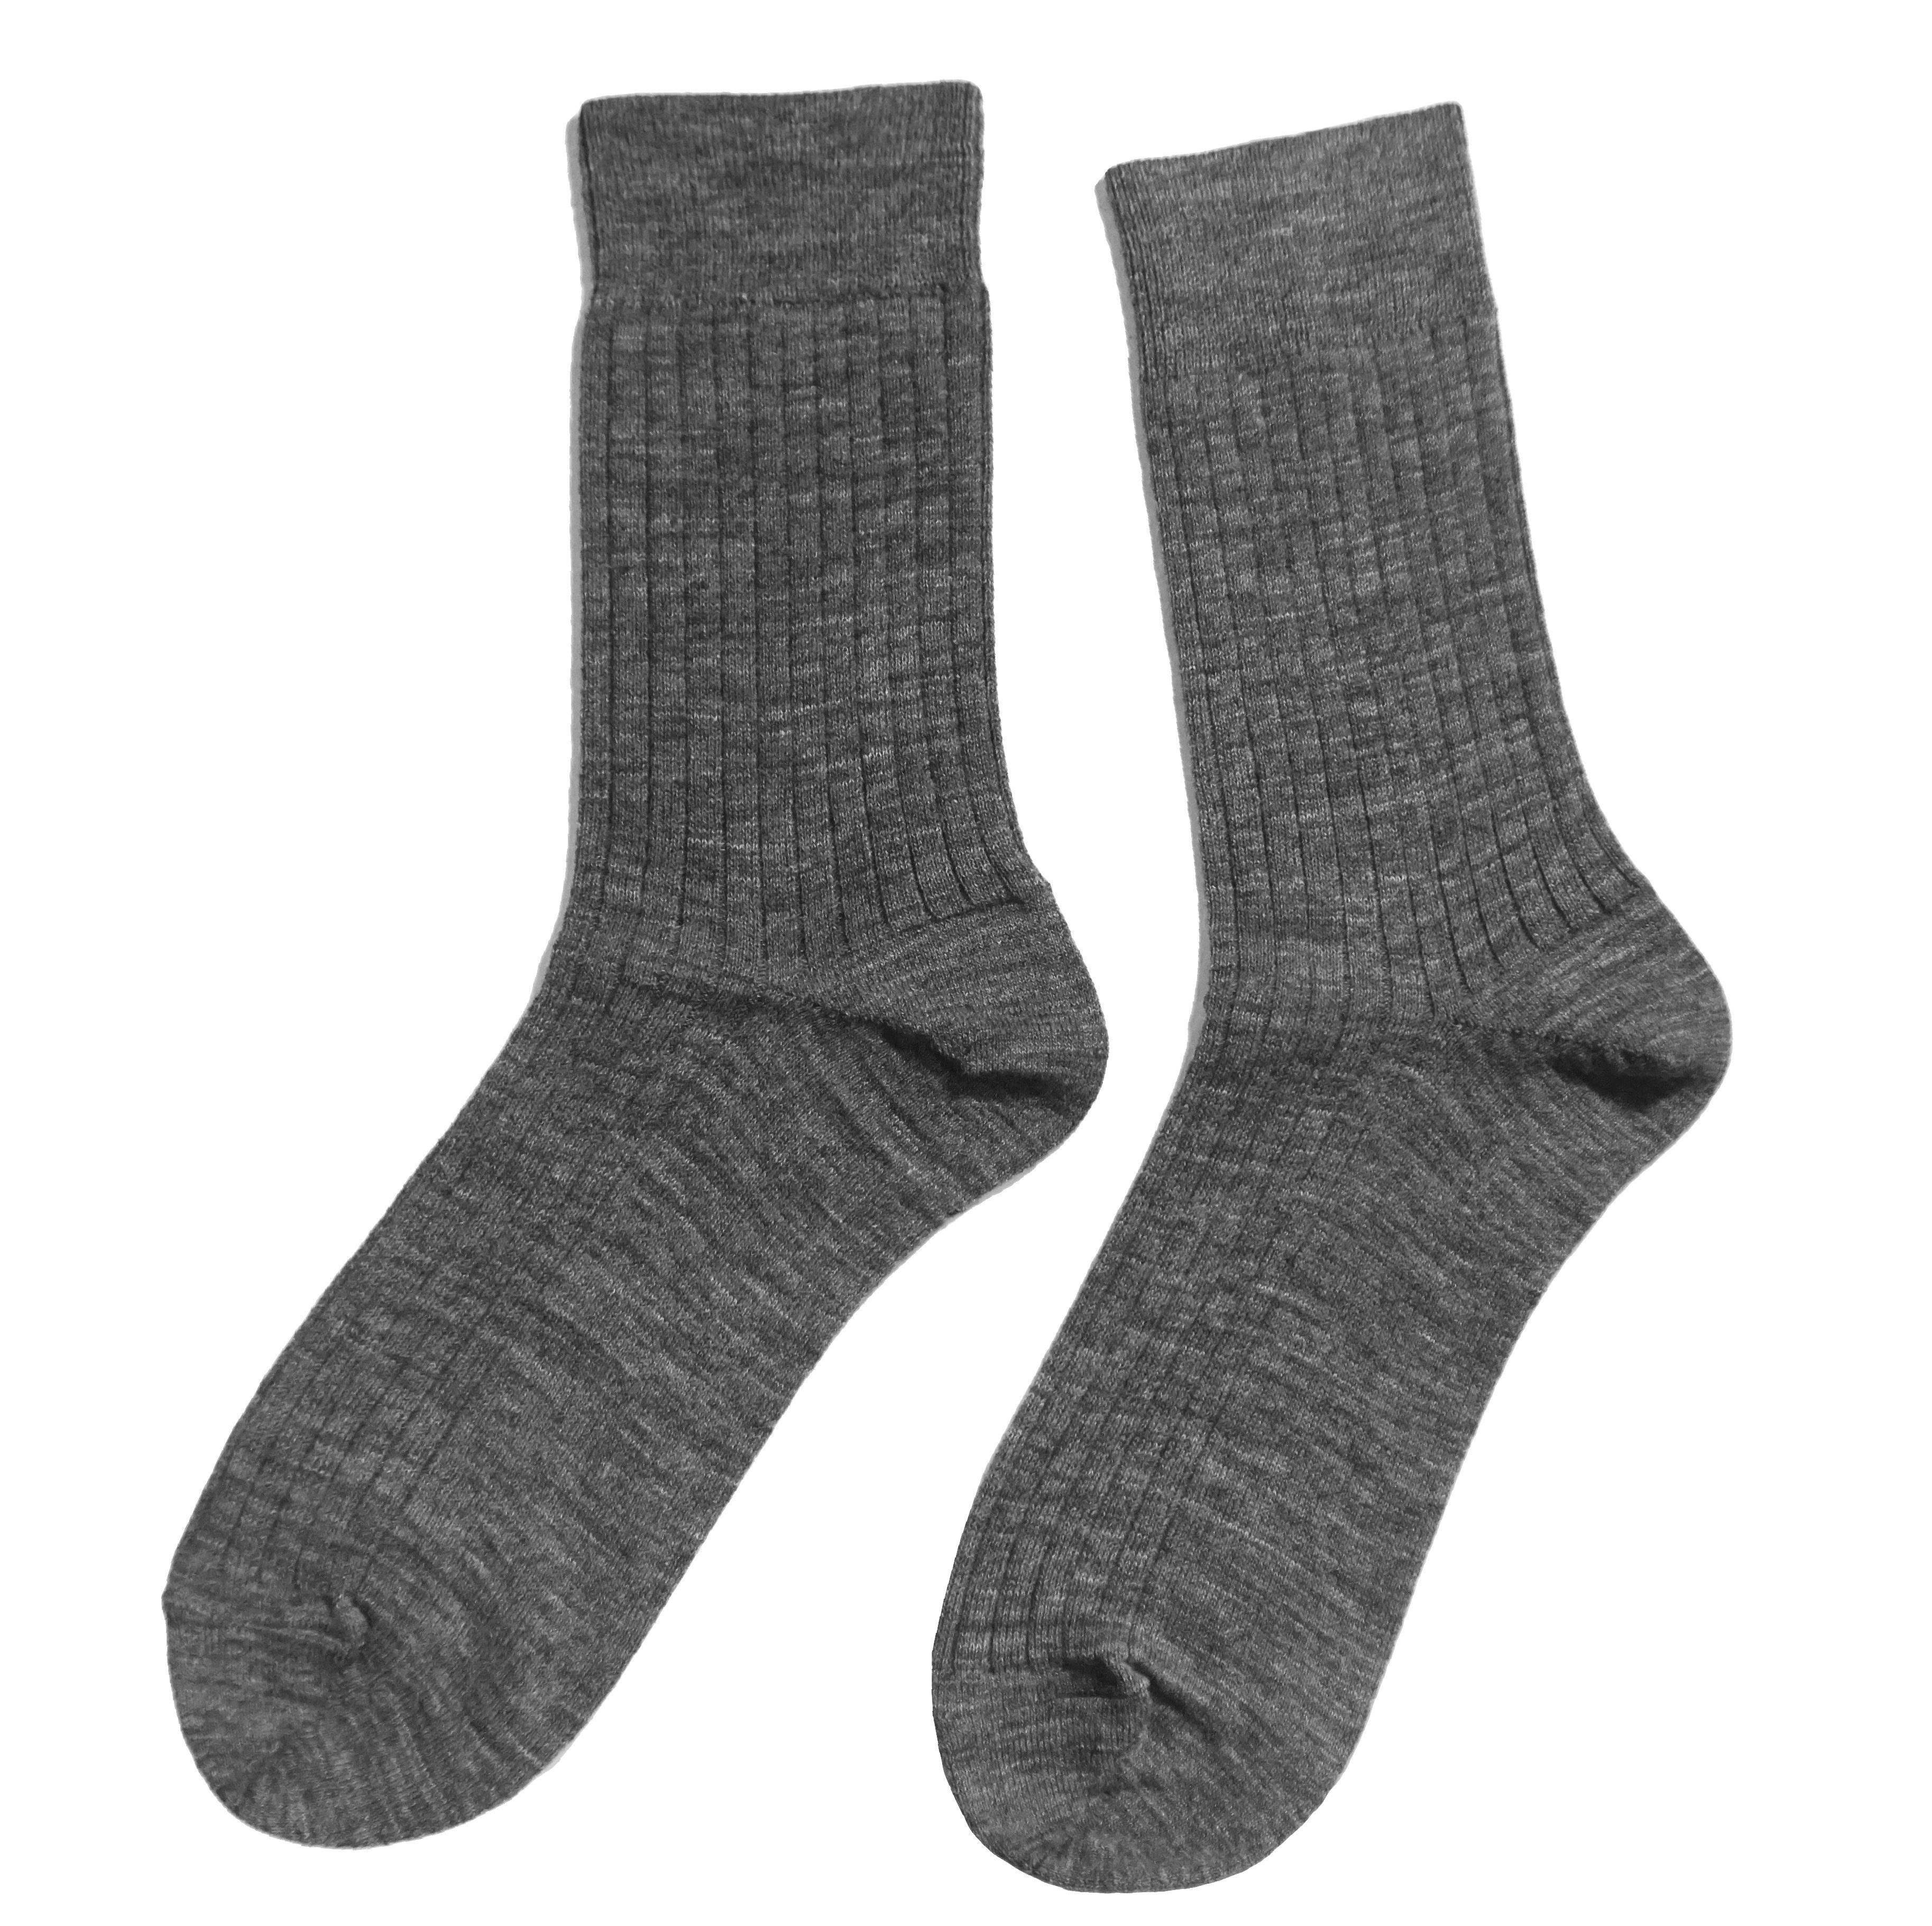 Wäsche/Bademode Socken WERI SPEZIALS Strumpfhersteller GmbH Socken Herren Socken 5:2 Rippe aus Wolle